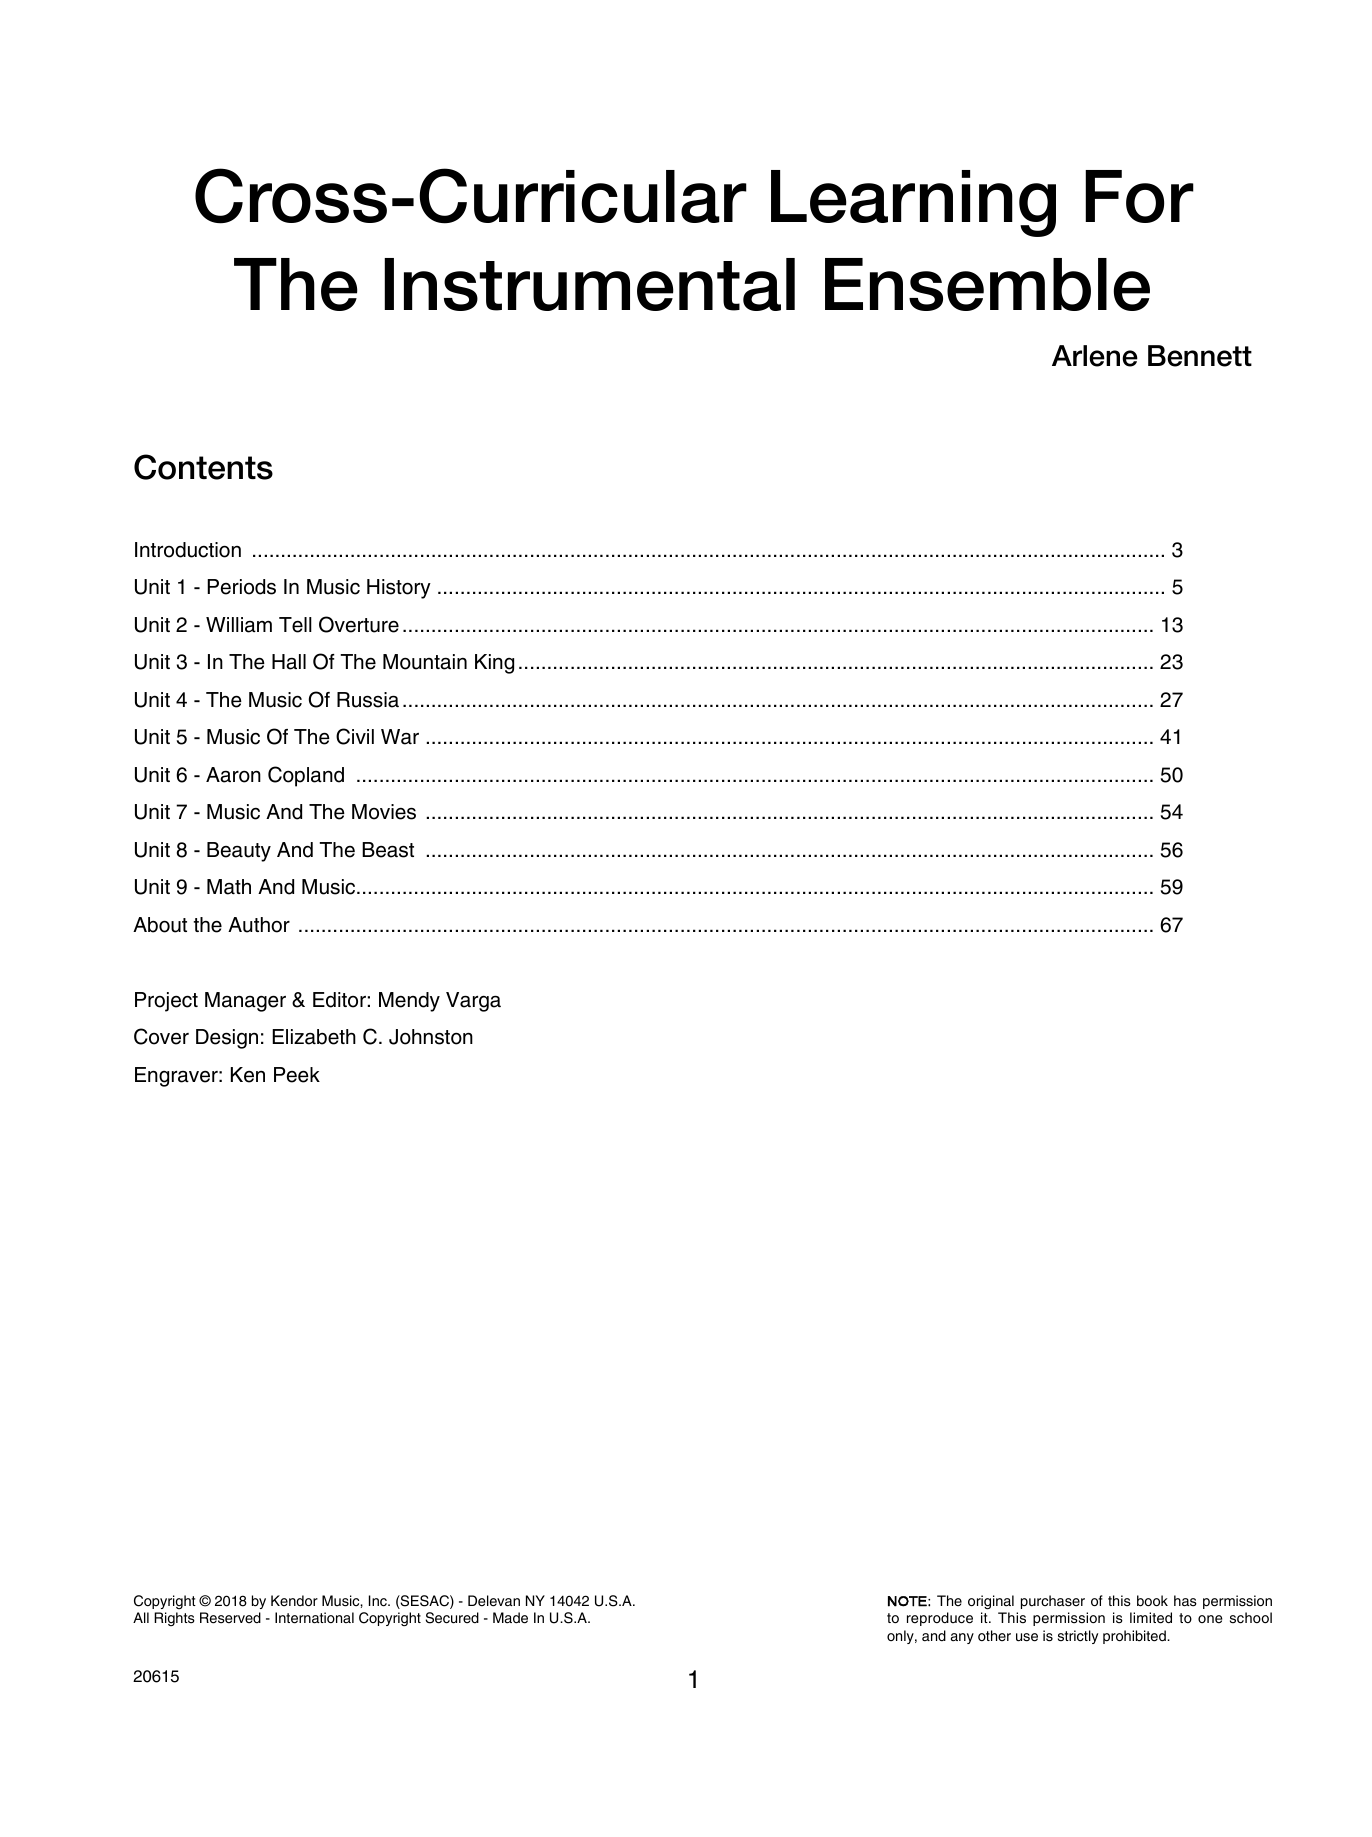 Download Annette Bennett Cross-curricular Learning For The Instr Sheet Music